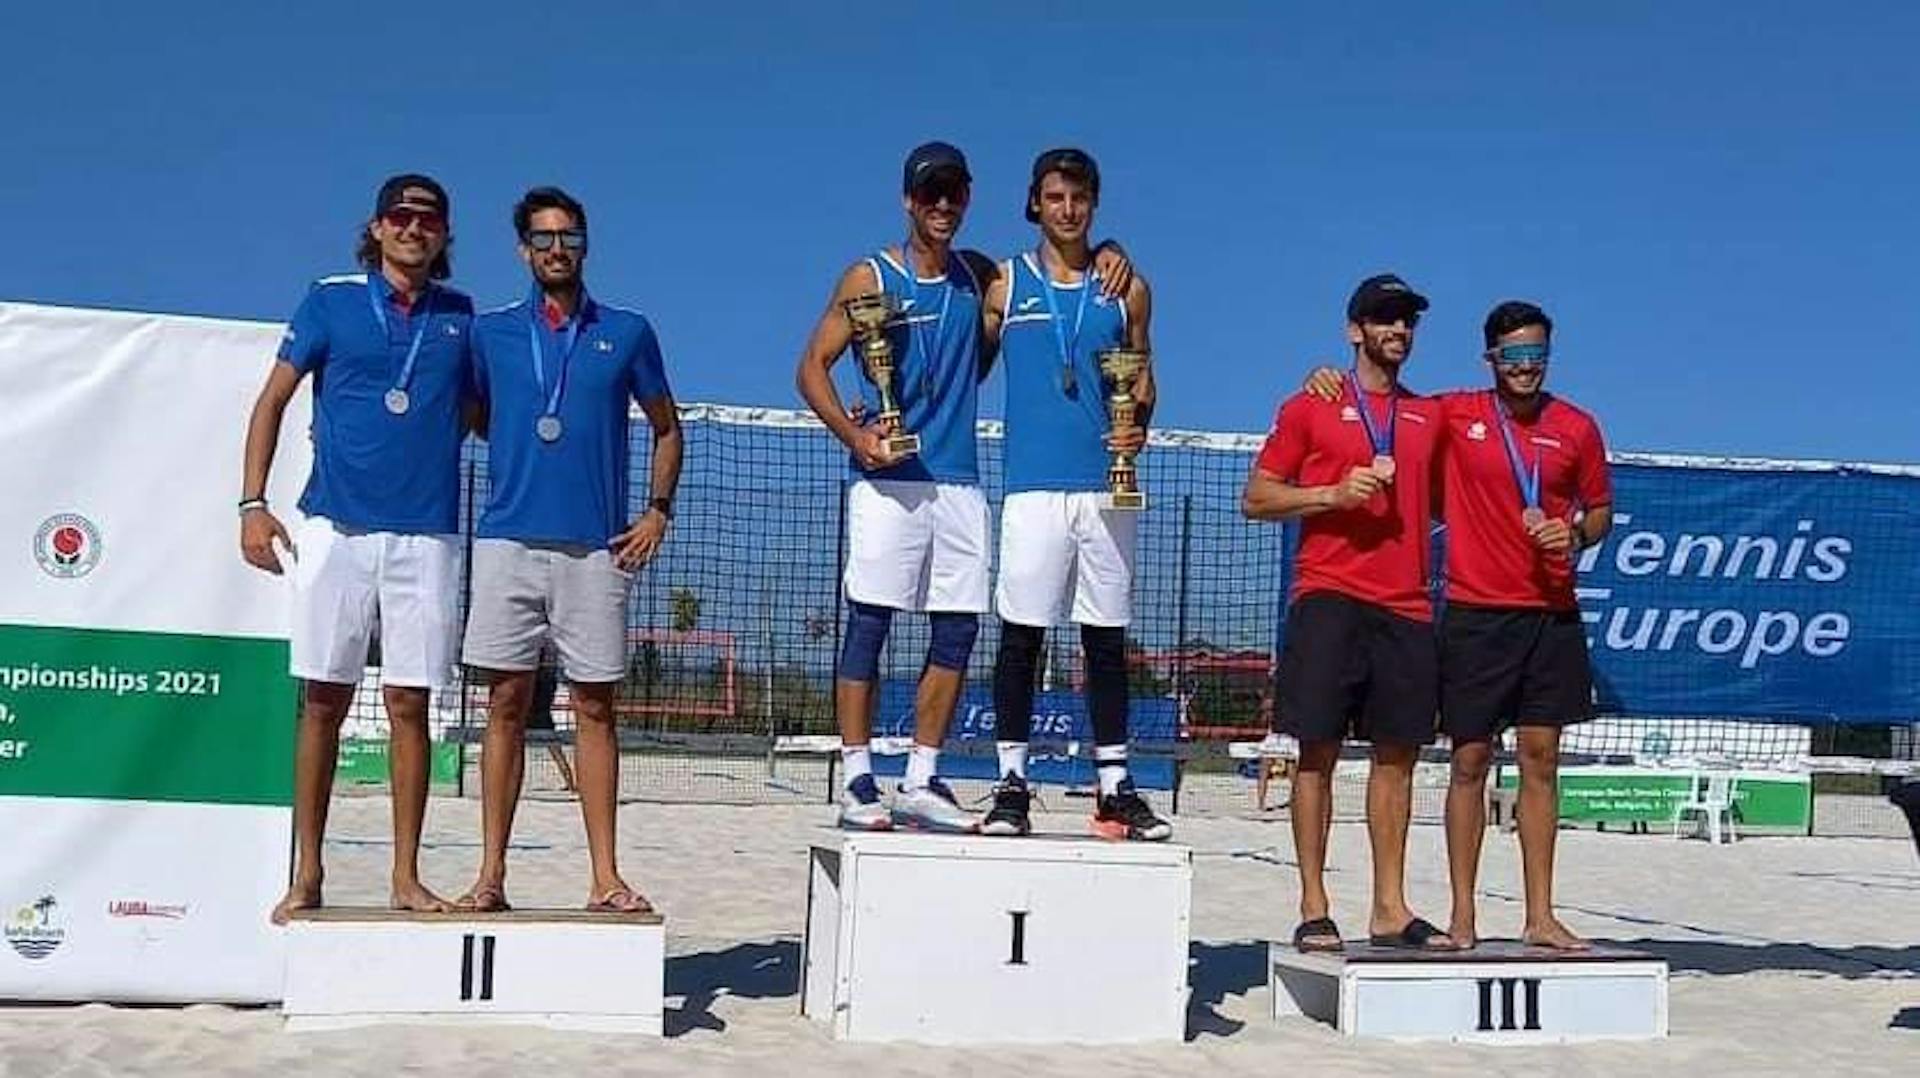 Le podium messieurs des championnats d'Europe de beach tennis 2021